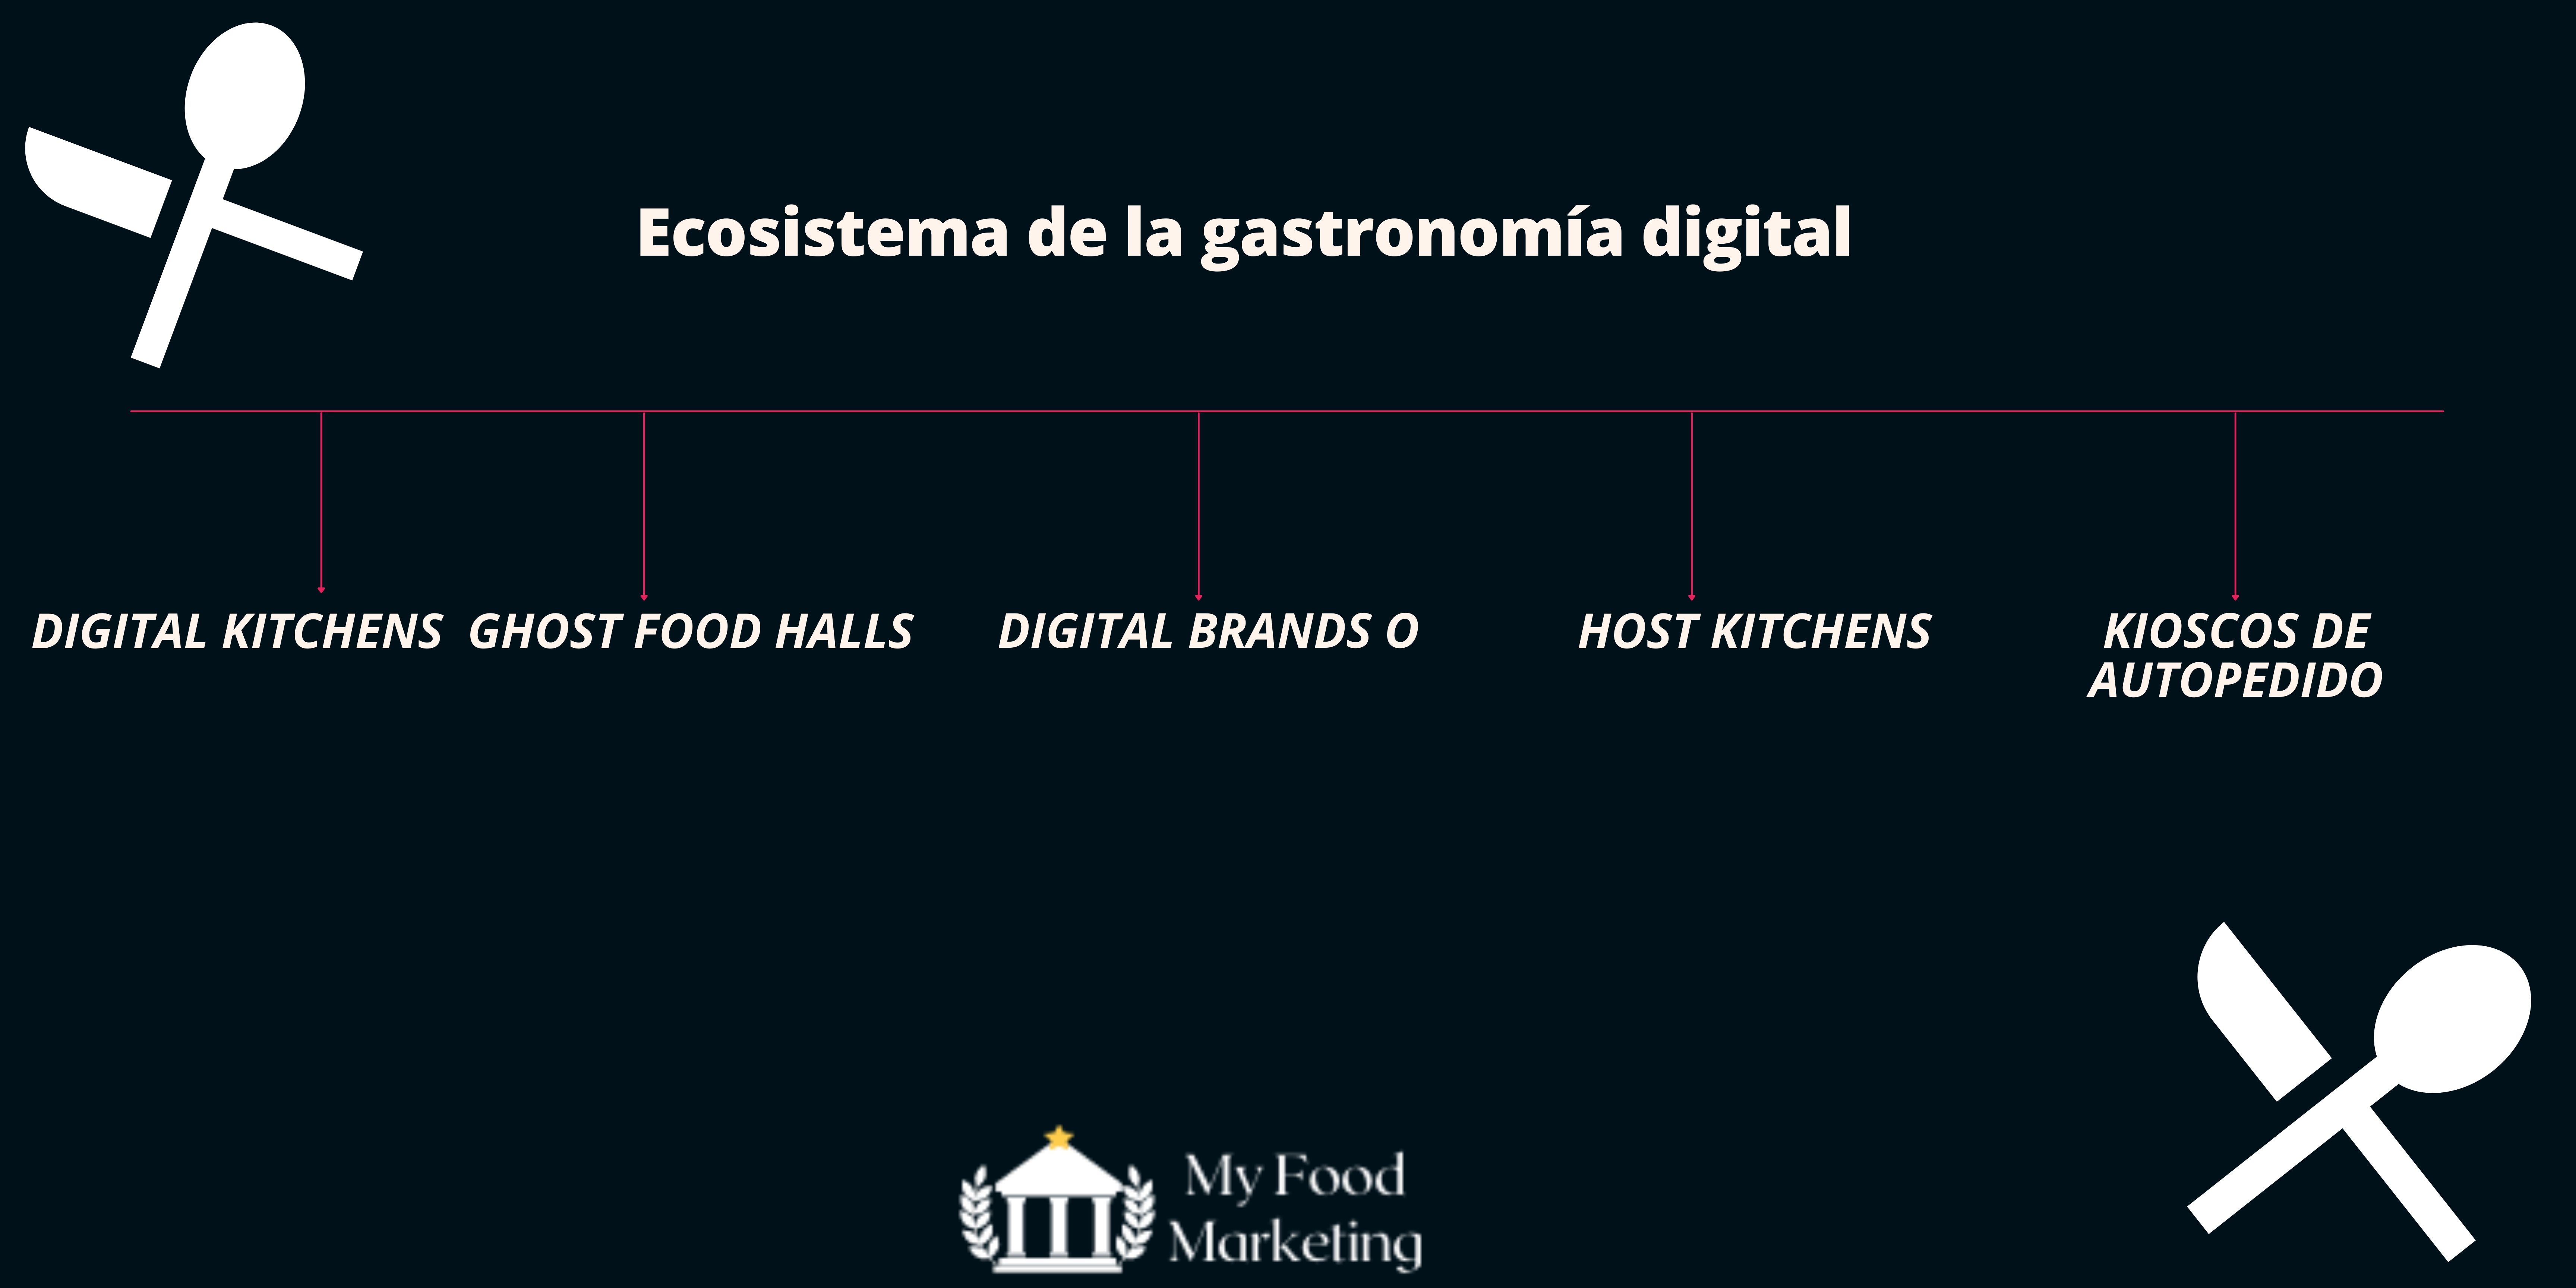  Ecosistema de la gastronomia digital